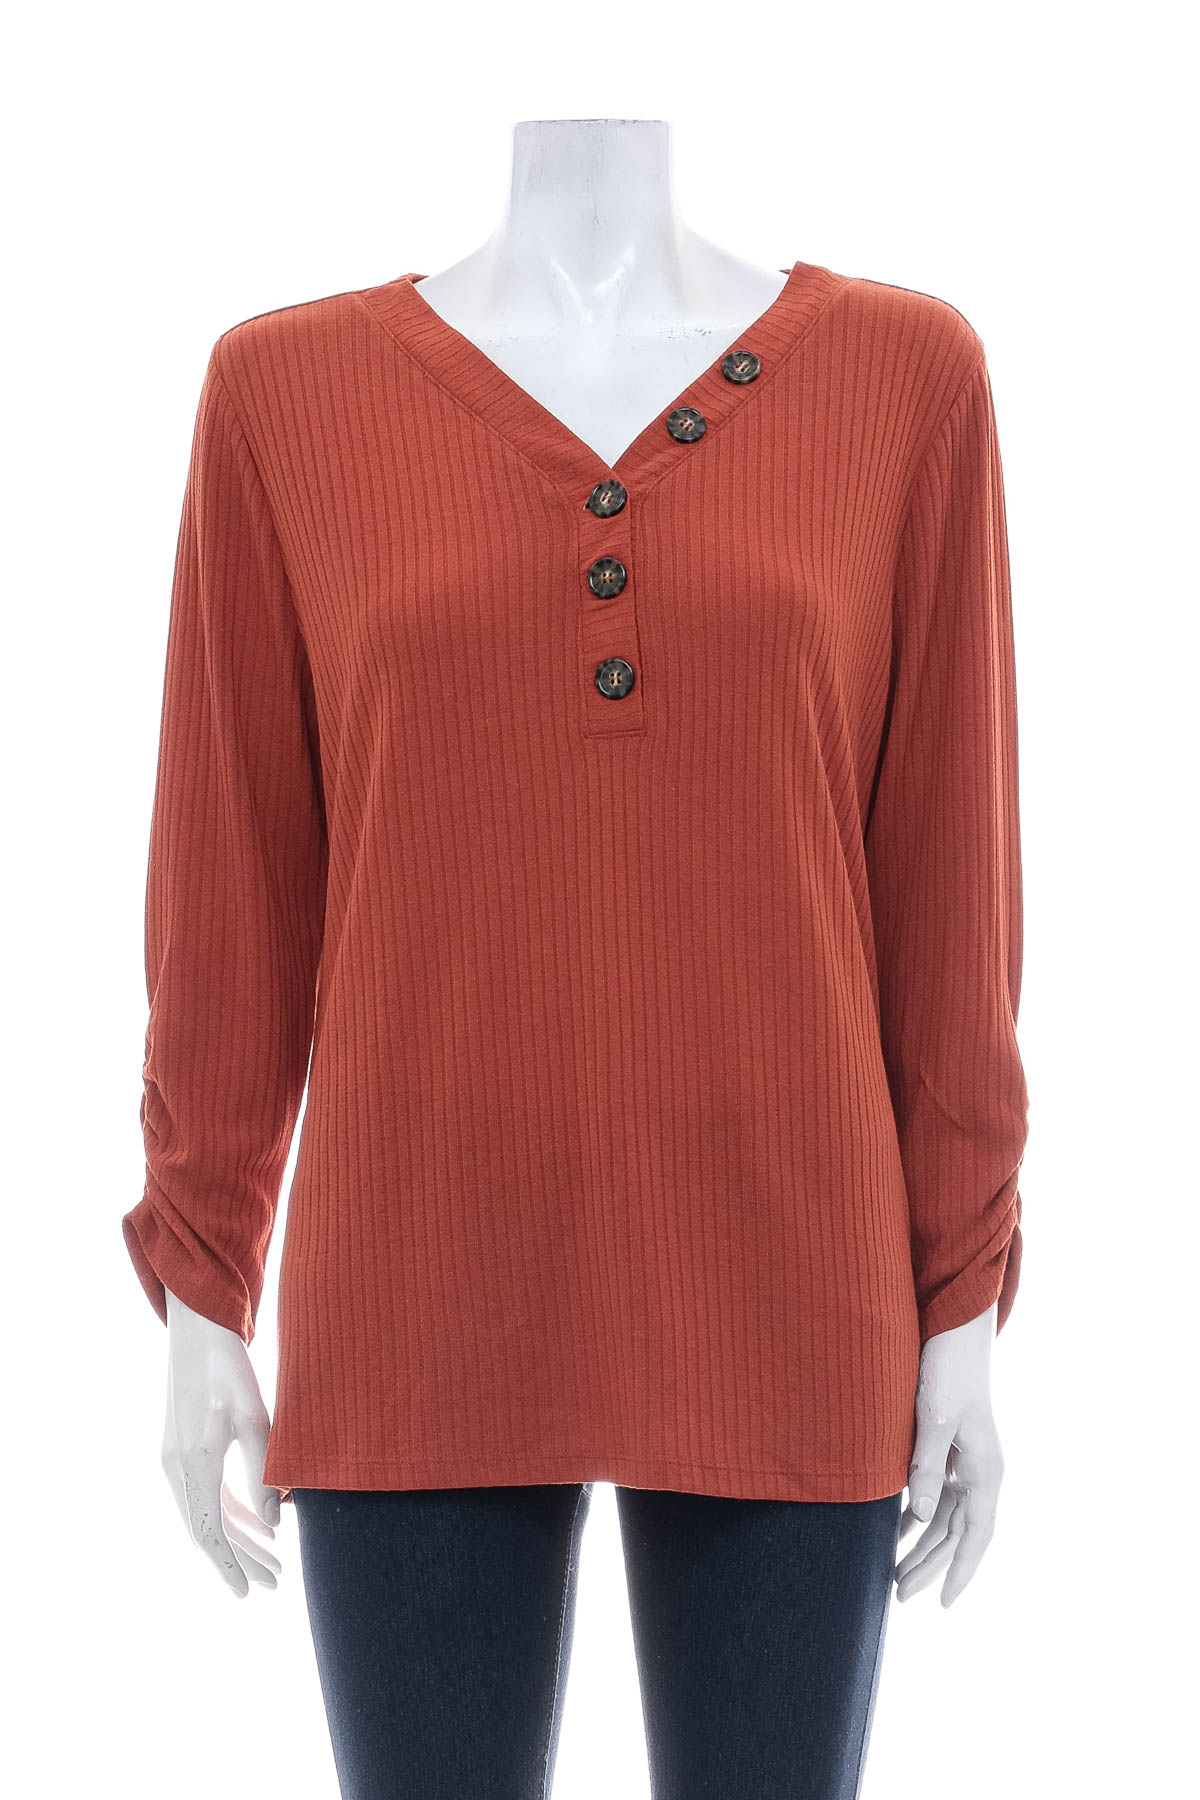 Women's sweater - EST. 1946 - 0